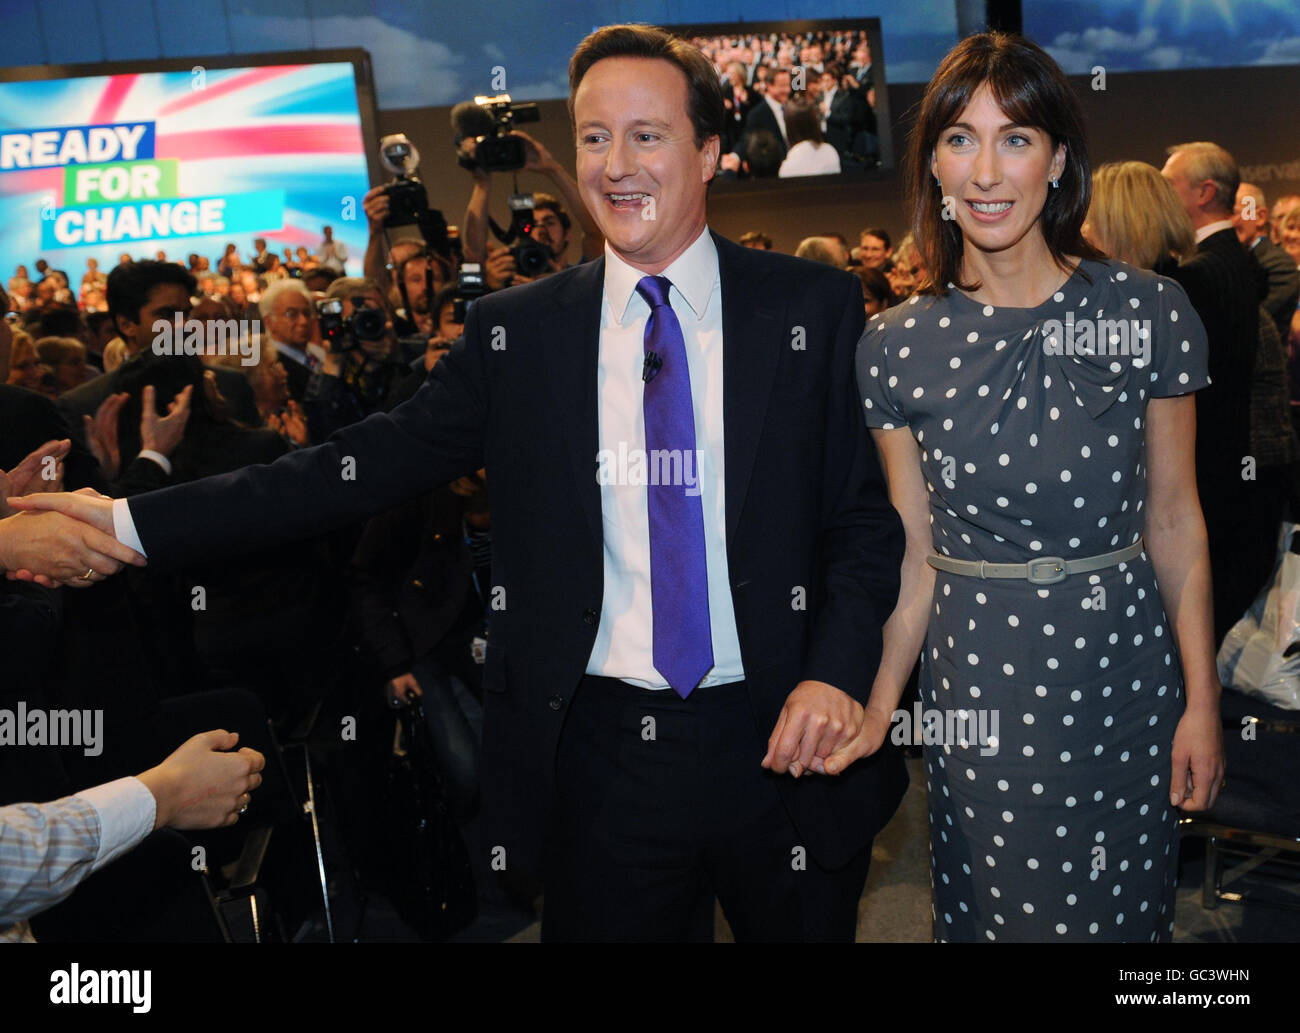 Il leader del Partito conservatore David Cameron si unisce alla moglie Samantha dopo il suo discorso di apertura ai delegati durante la conferenza del Partito conservatore a Manchester. Foto Stock